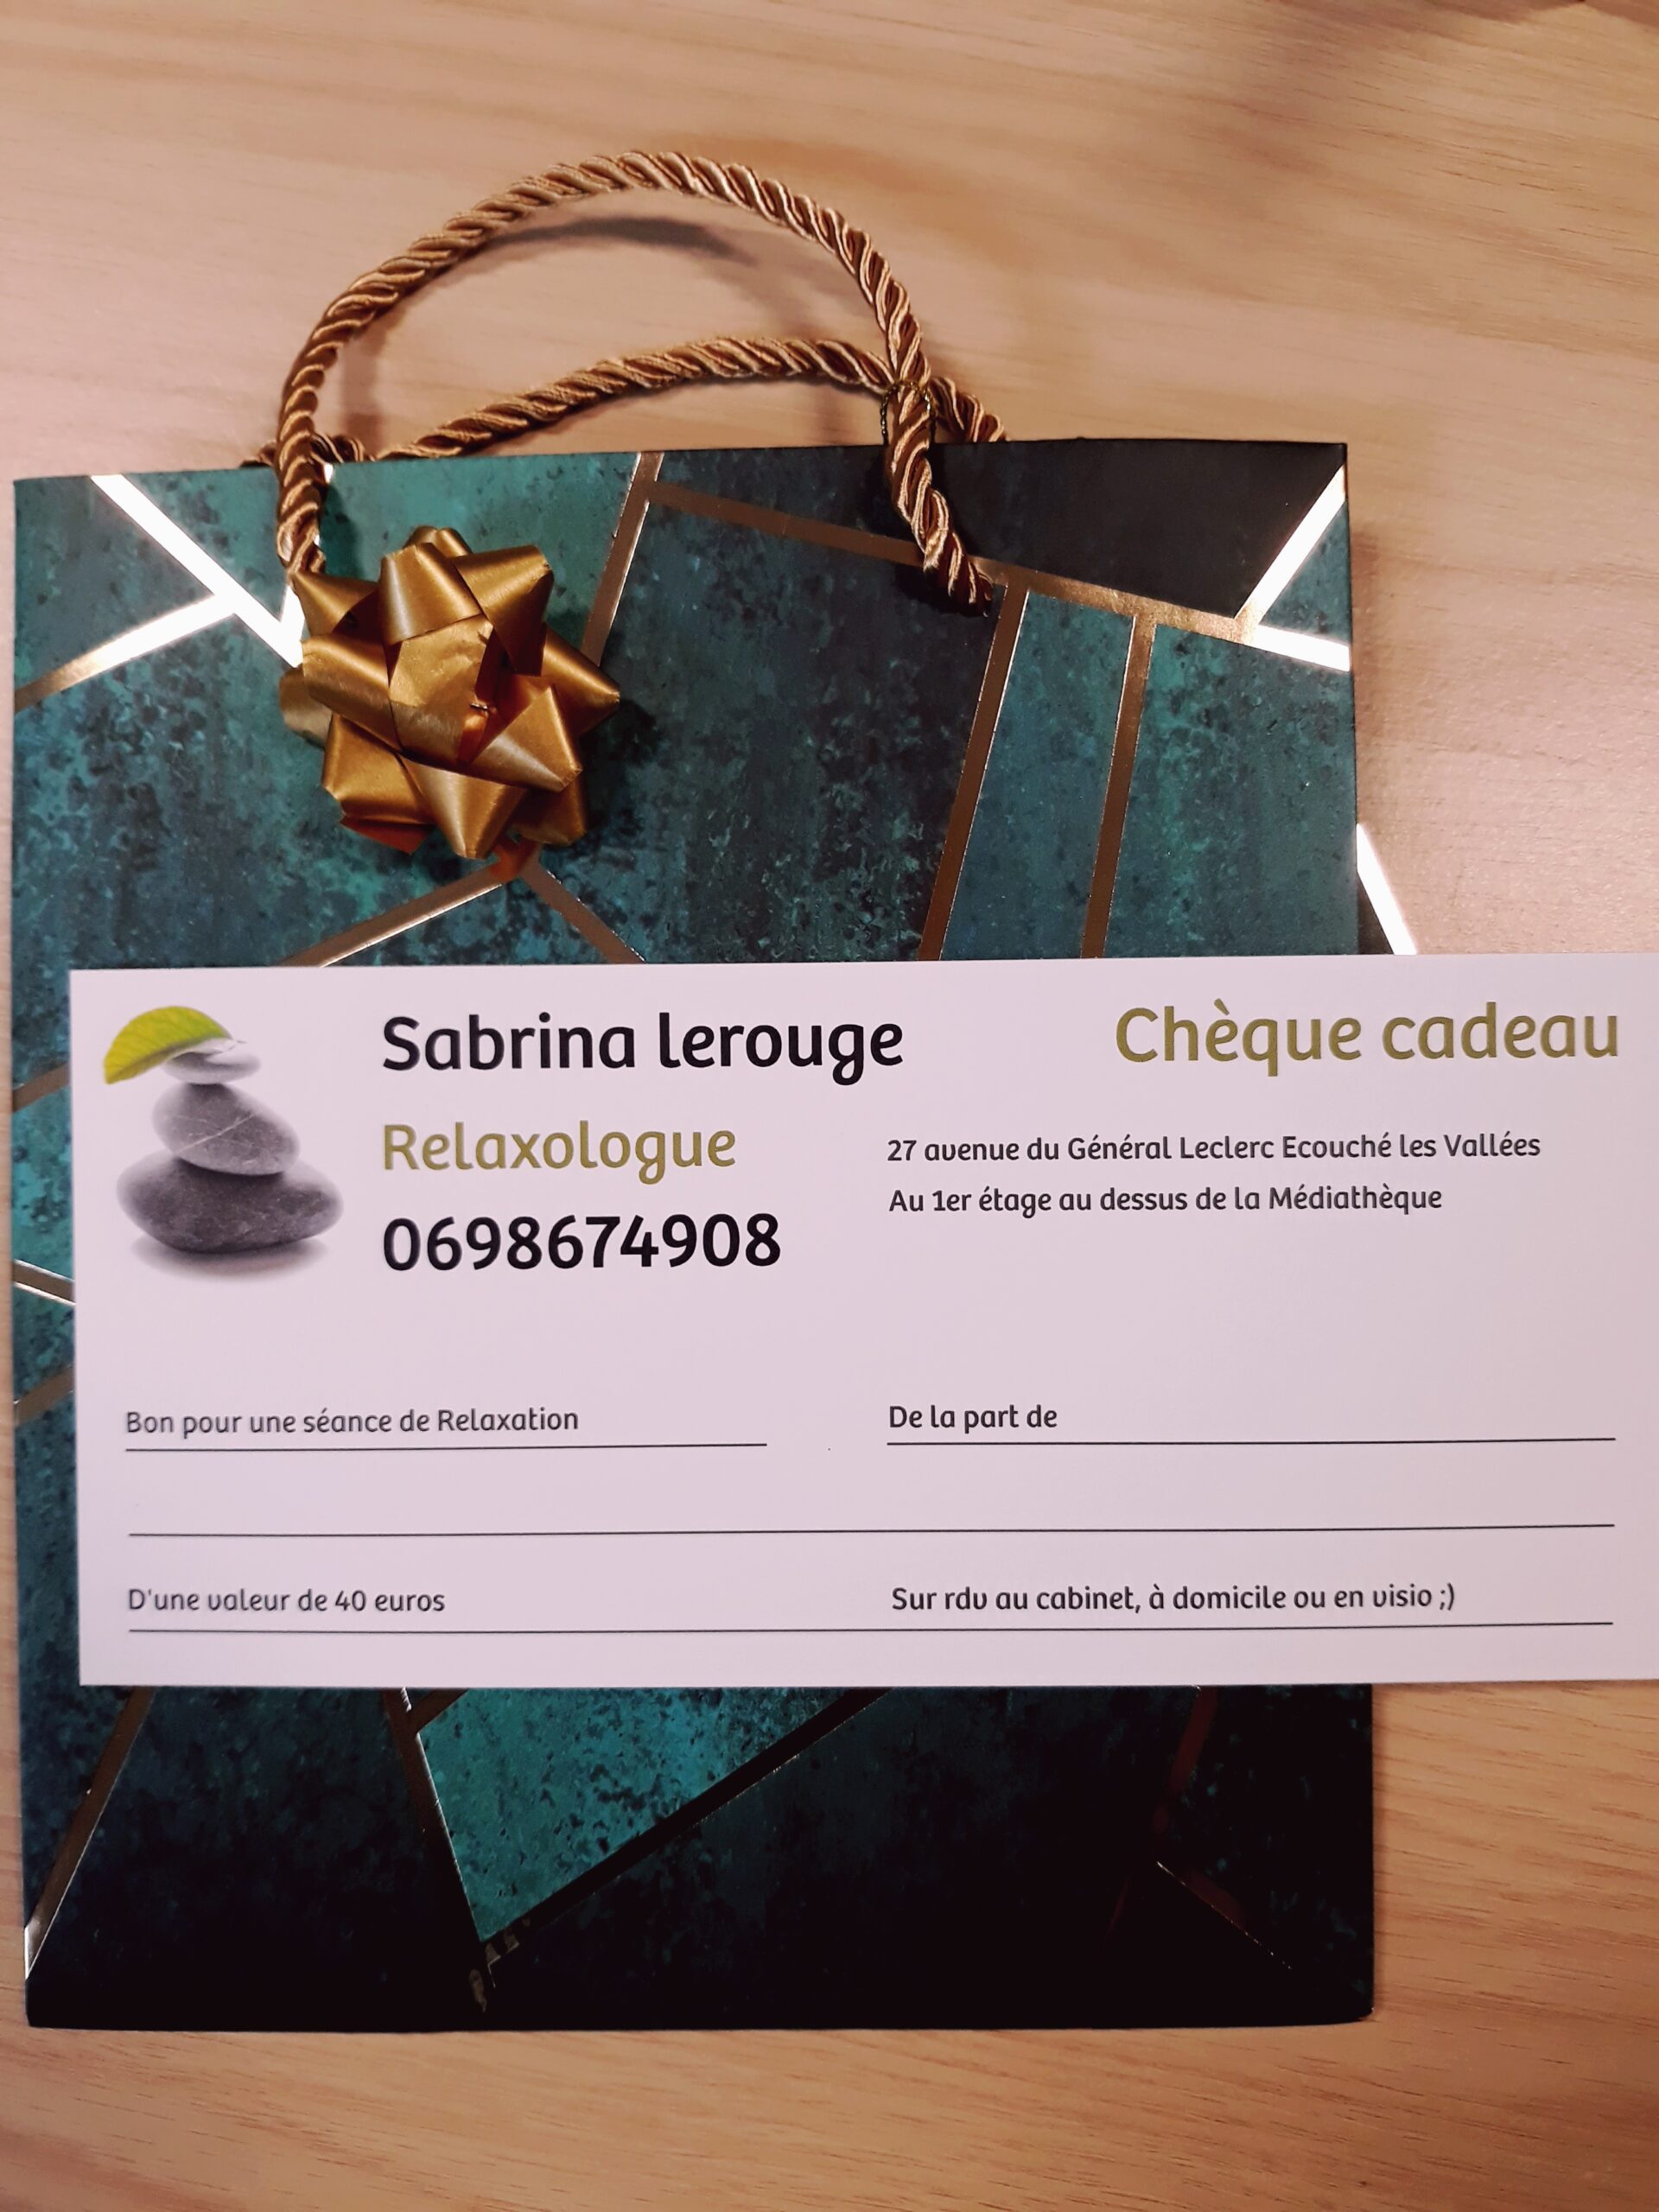 sabrina-lerouge-relaxologue-cheque-cadeau